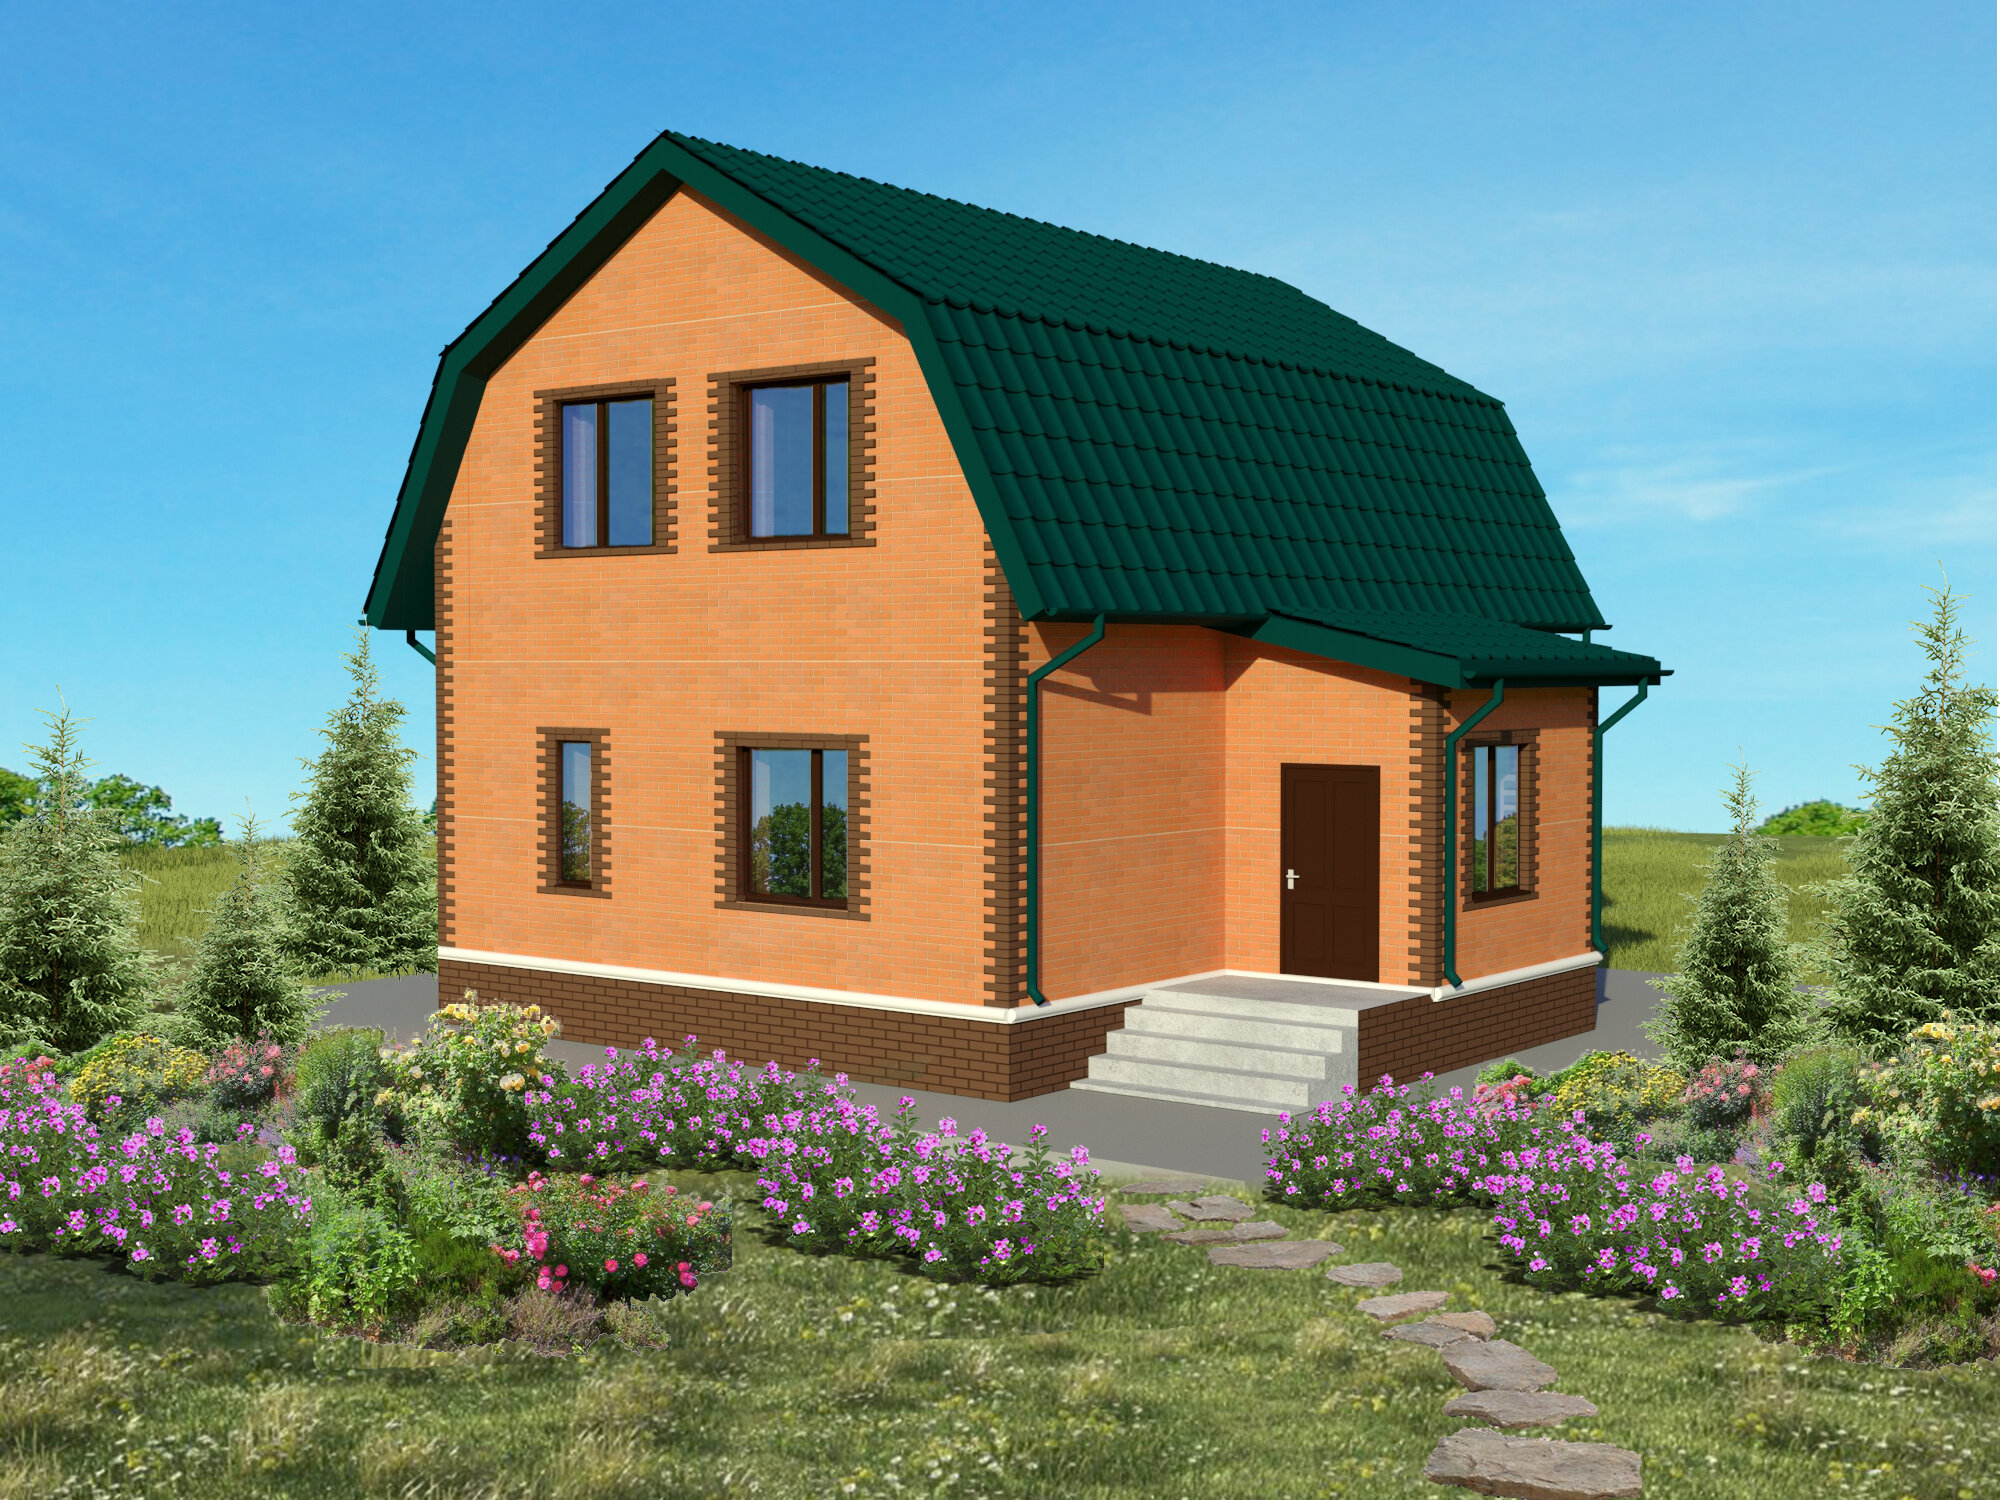 Проект жилого дома STROY-RZN 15-0008 (132,0 м2, 11,04*10,38 м, керамический блок 440 мм, облицовочный кирпич)